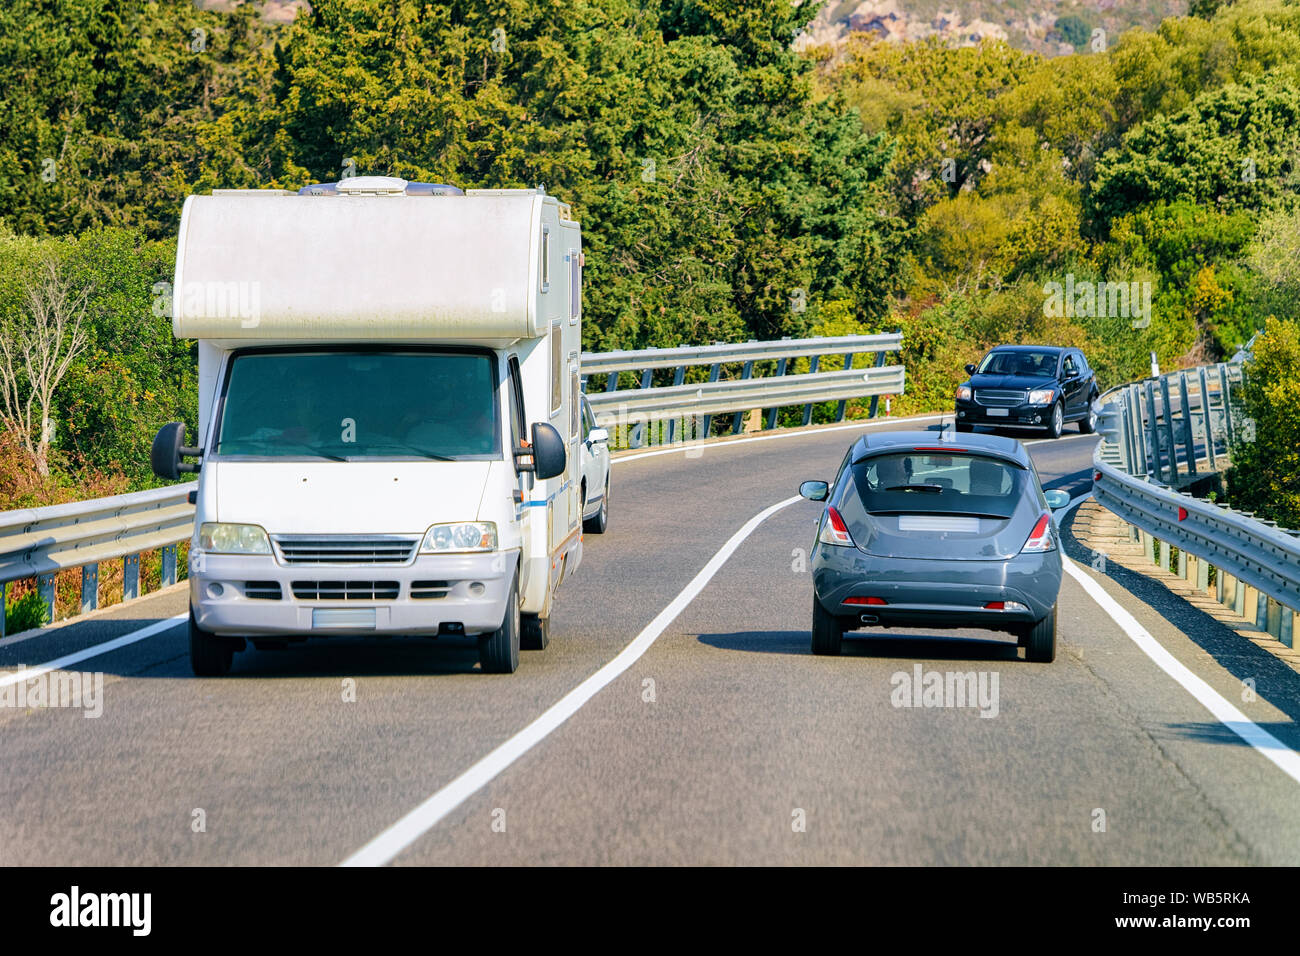 Rv cavaran und Autos in der Straße an der Costa Smeralda auf Sardinien in Italien im Sommer. Reisemobil rving auf der Autobahn. Camper Trailer auf der Autobahn. Stockfoto